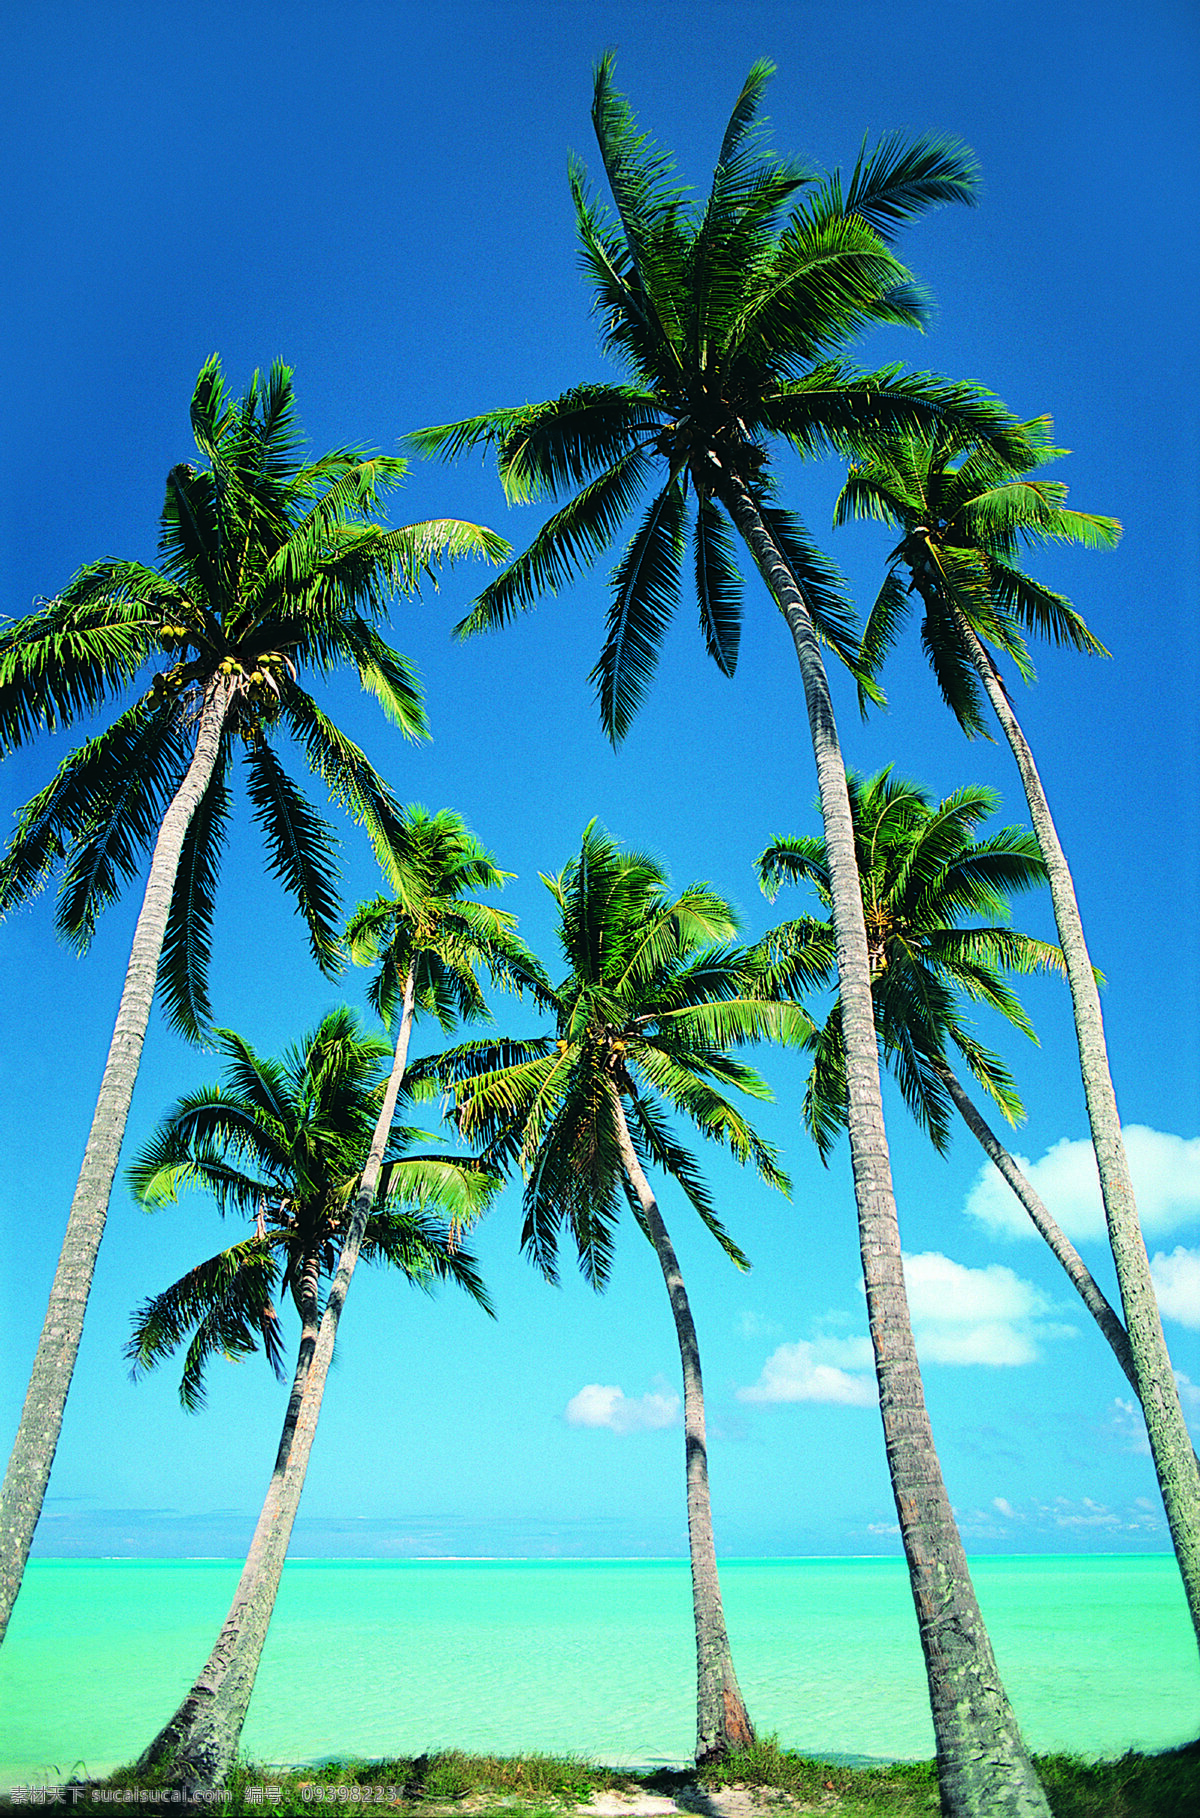 海岛风情 椰树 99 海岛 岛屿 海景 风光图片 风光摄影 风景图片 风光照片 风景照片 风景摄影 棕榈 树 树木 海 大海 海洋 自然景观 自然风景 美丽风光 摄影图片 摄影图库